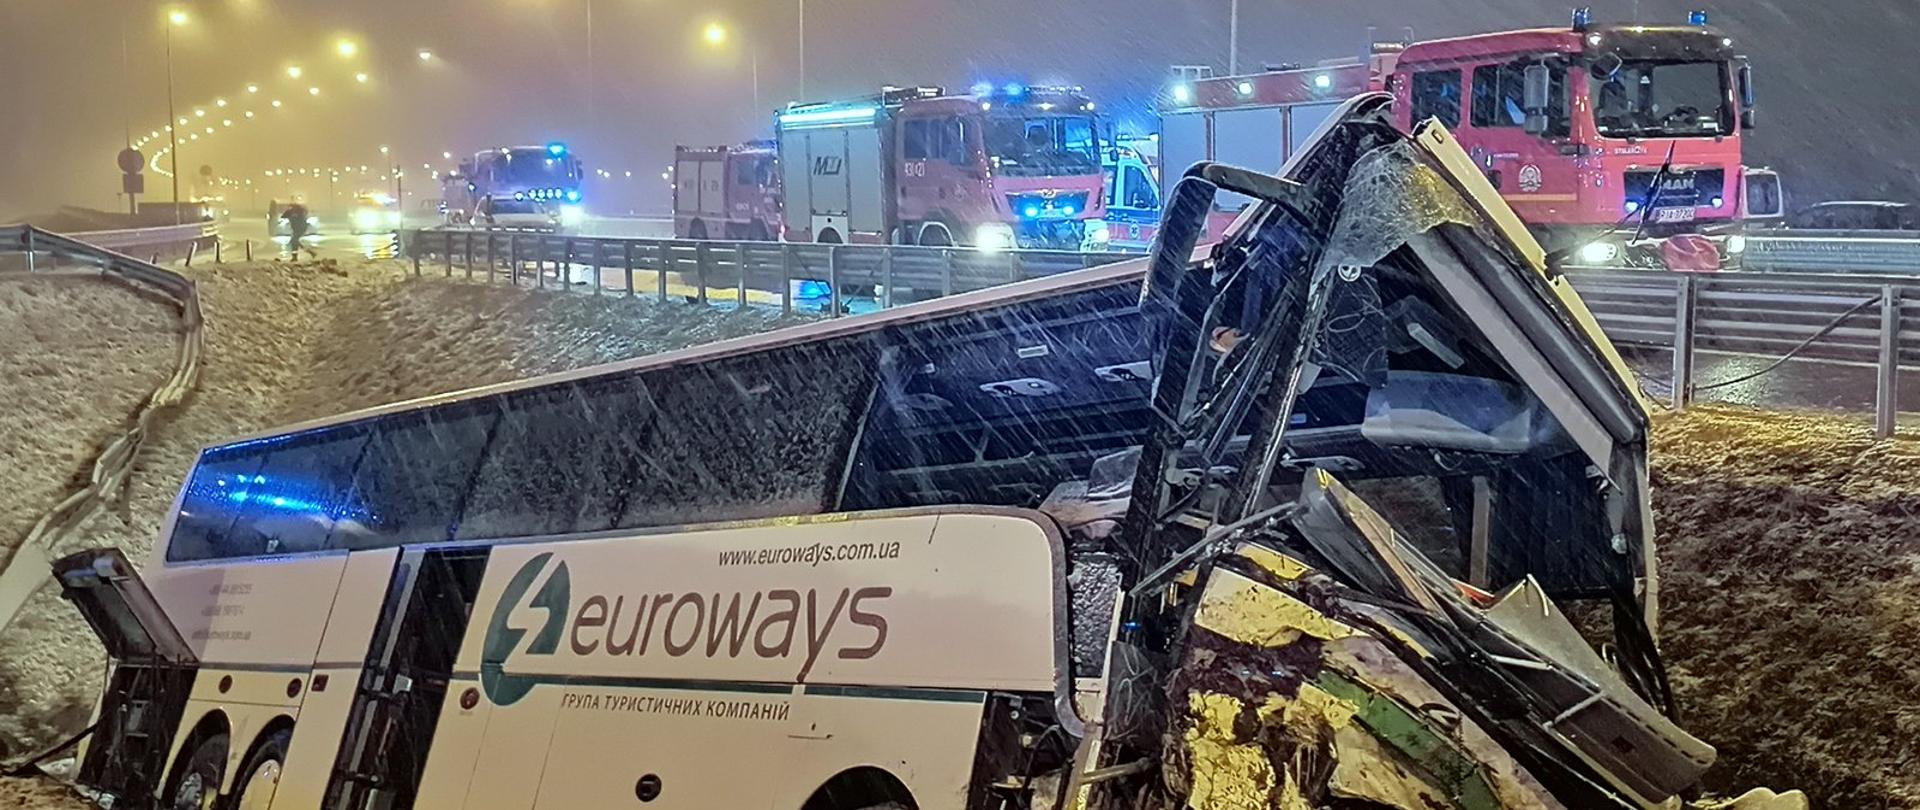 Na zdjęciu widać uszkodzony autobus, który wpadł do rowu przy autostradzie. Na pasie ruchu stoją pojazdy strażackie z włączoną sygnalizacją świetlną. Zdjęcie zrobione w porze nocnej, w trakcie opadów śniegu.